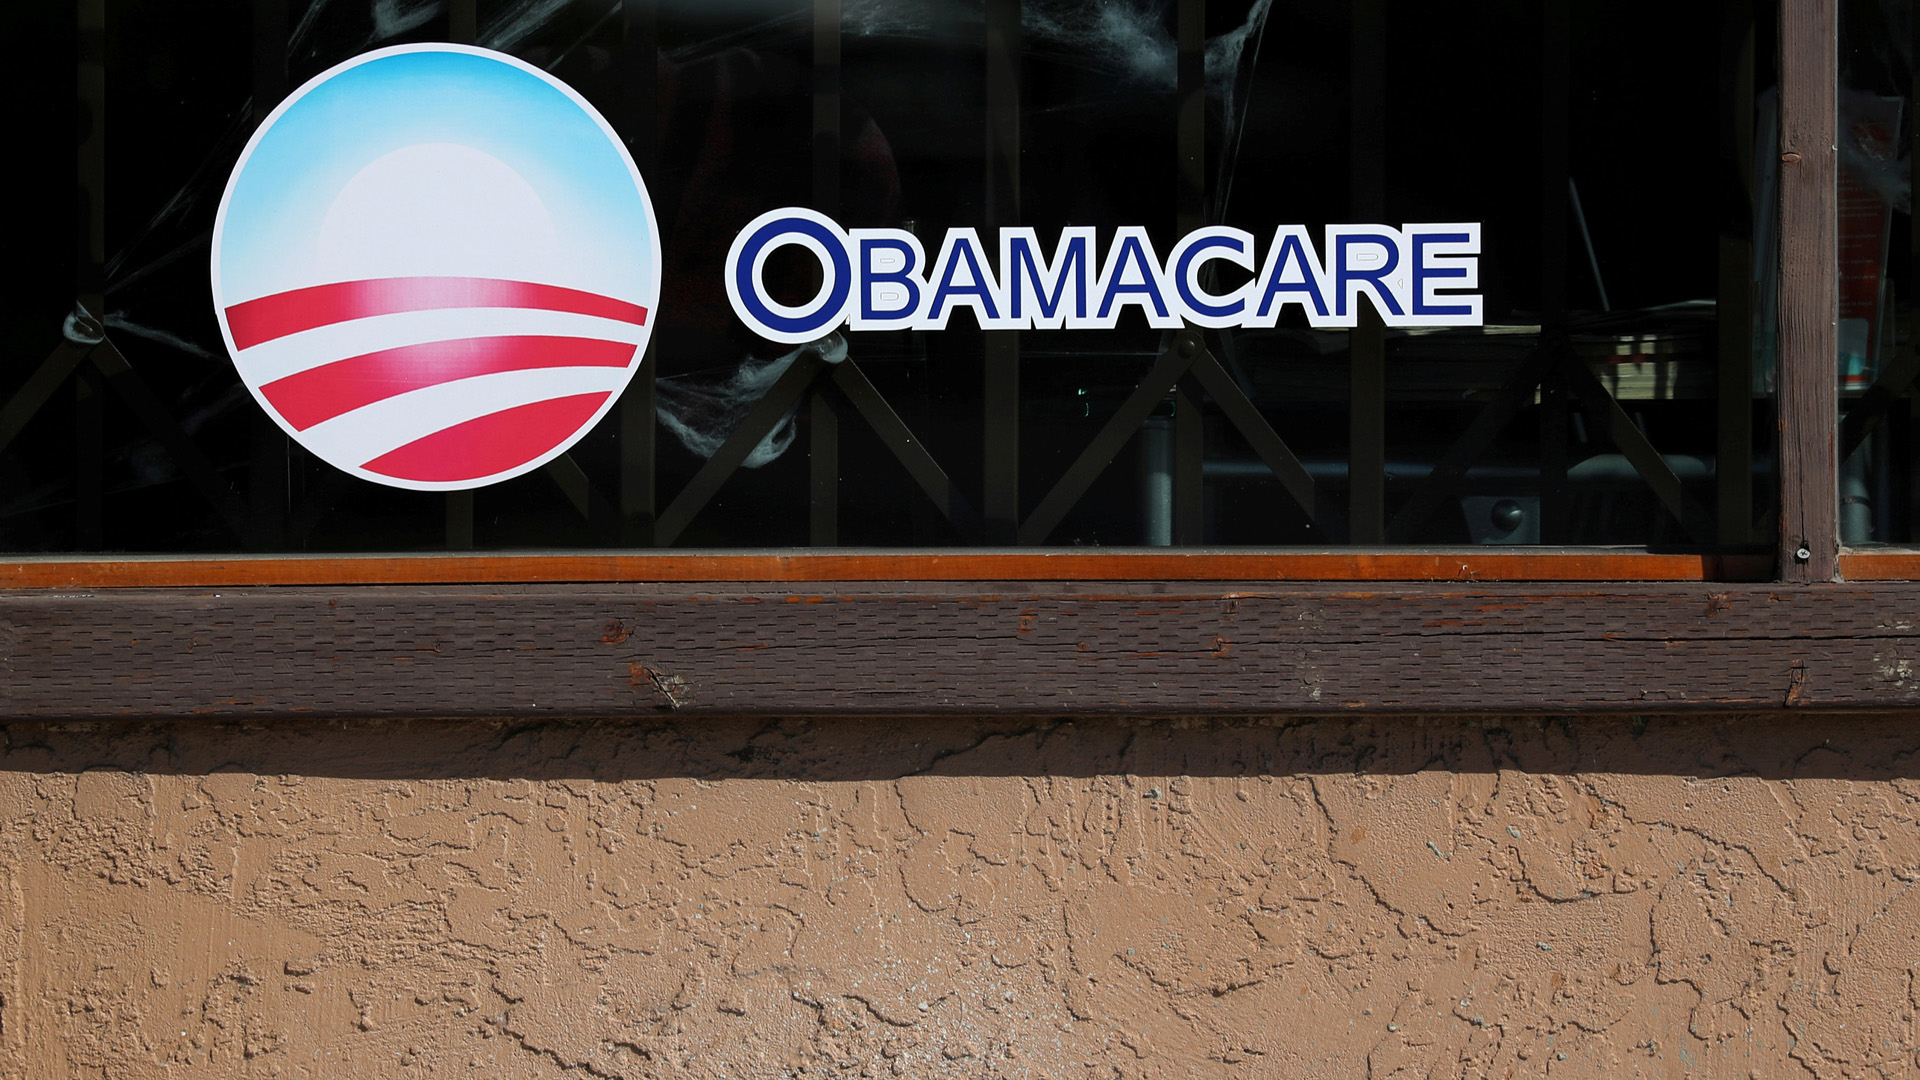 Obamacare-Schild | Bildquelle: REUTERS